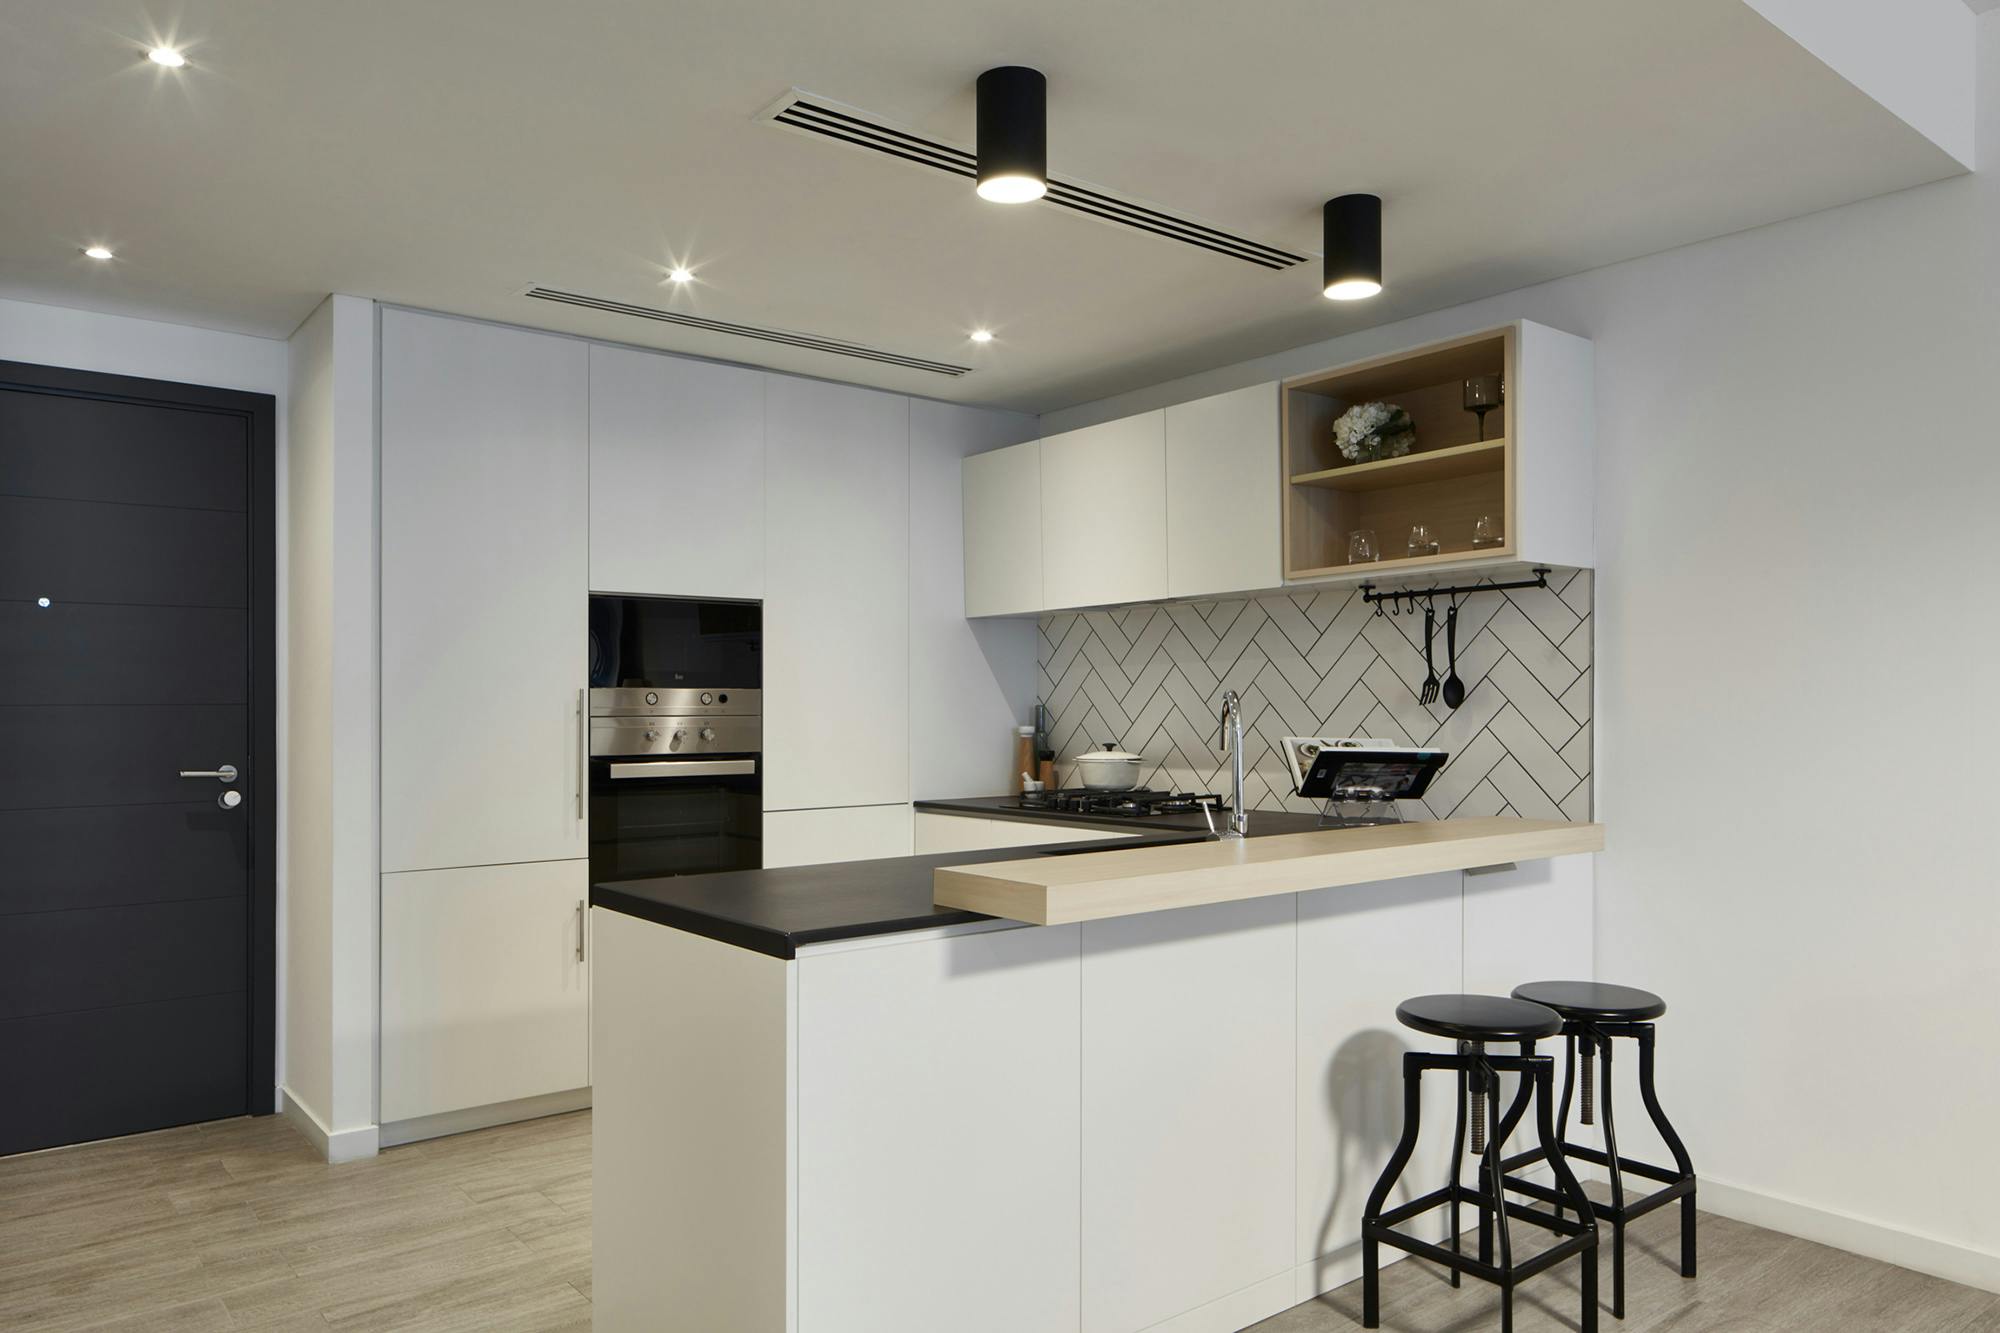 Bildnummer 32 des aktuellen Abschnitts von DKTN Sirius adds a welcoming touch to the kitchens of a residential development in Dubai von Cosentino Deutschland